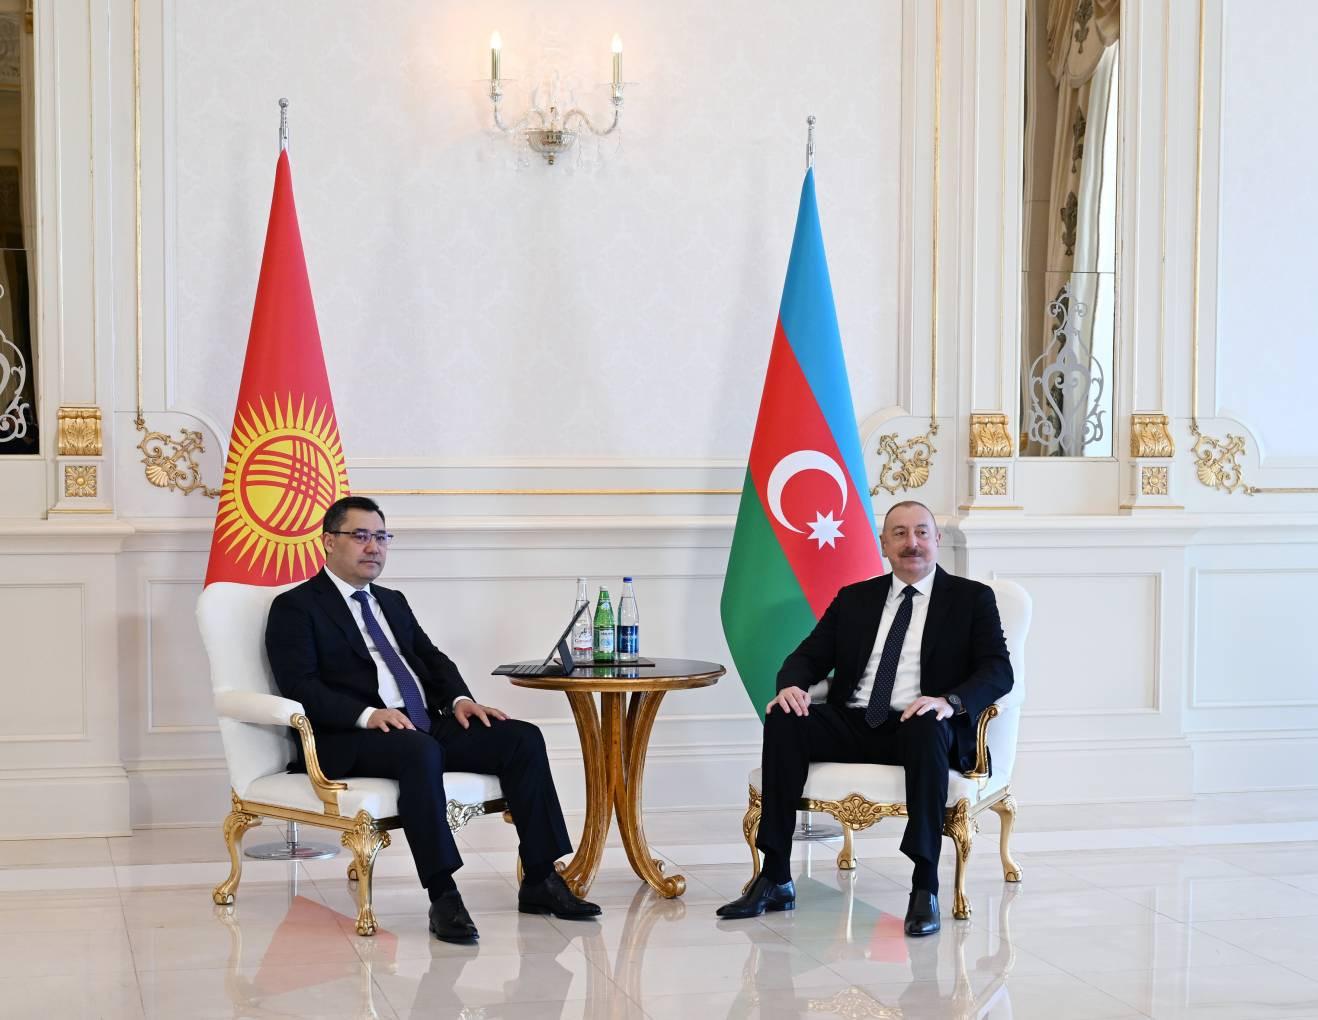 Ղրղզստանի նախագահը պետական այցով ժամանել է Ադրբեջան